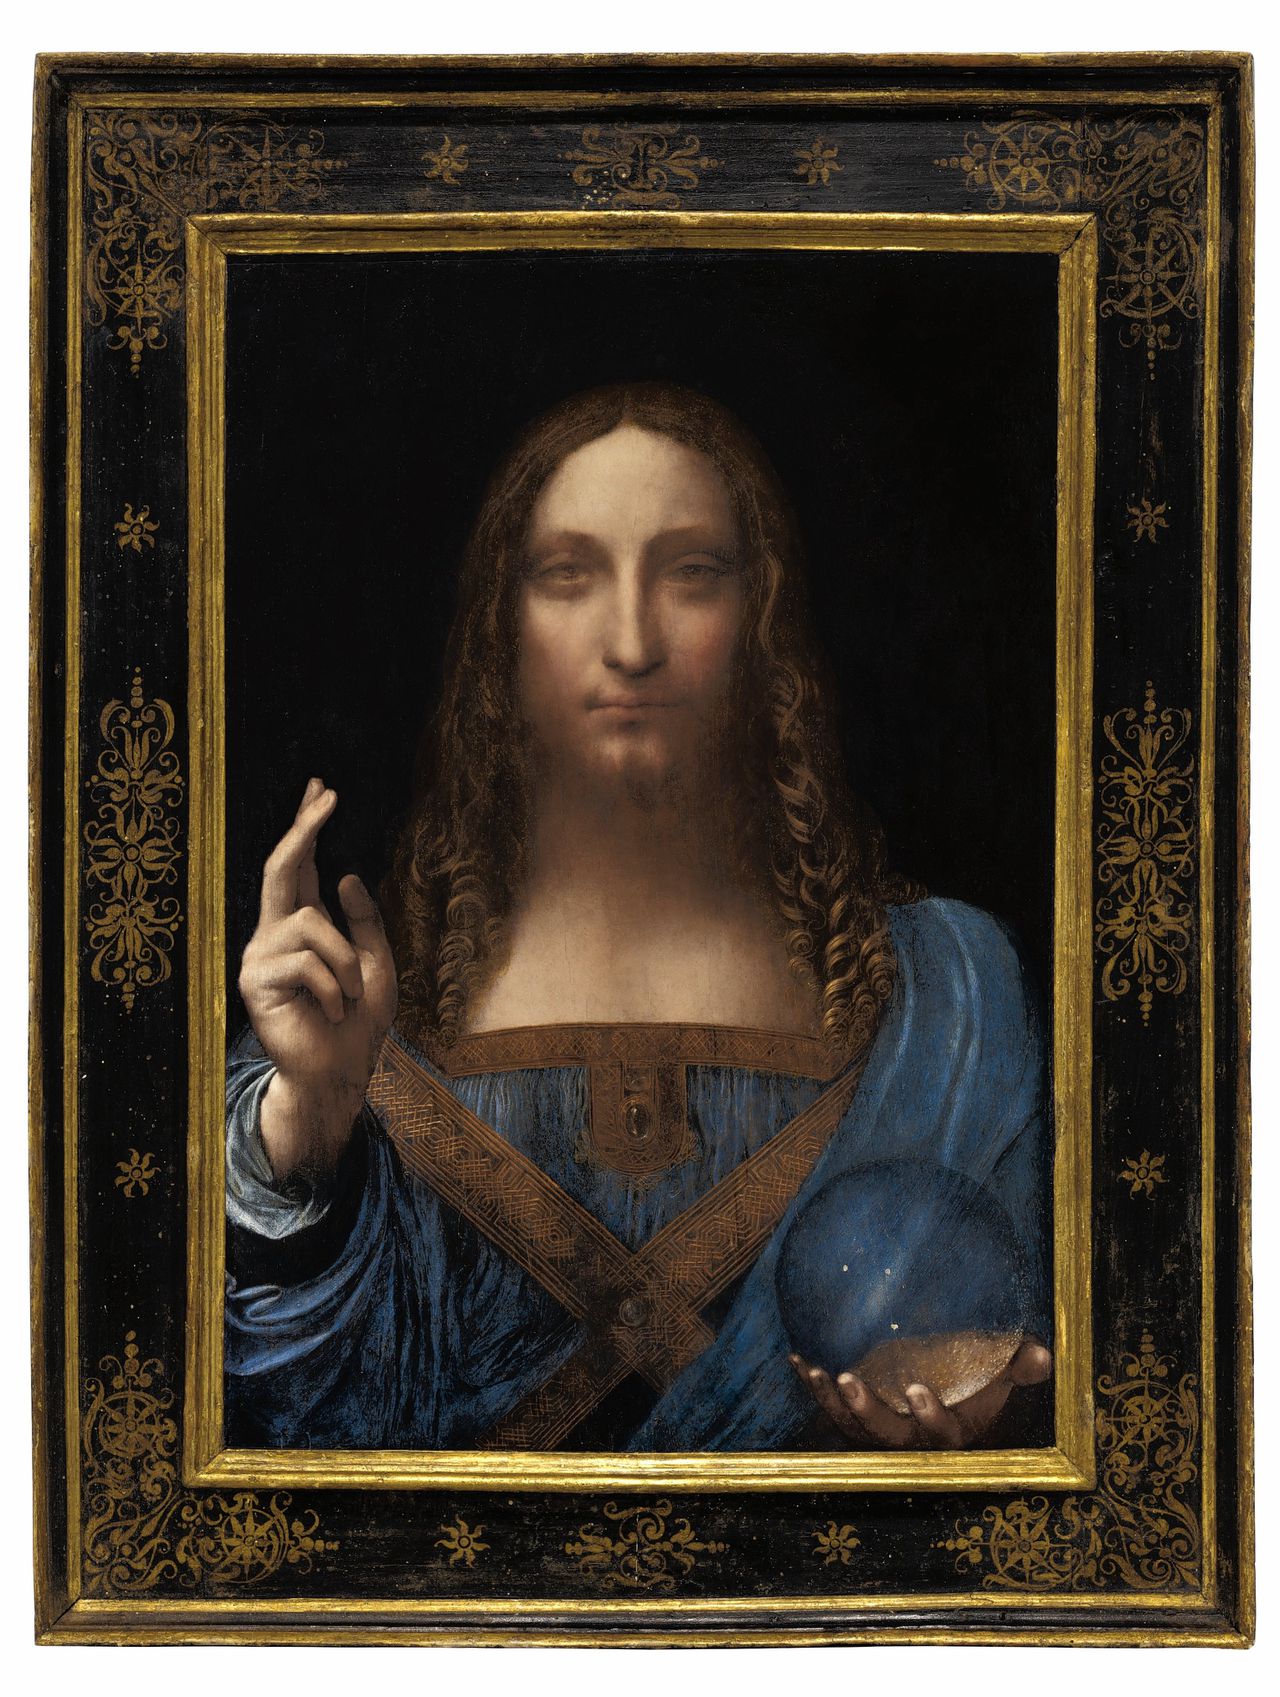 Salvator Mundi, het schilderij van Leonardo da Vinci dat voor het recordbedrag van 450 miljoen dollar werd verkocht.